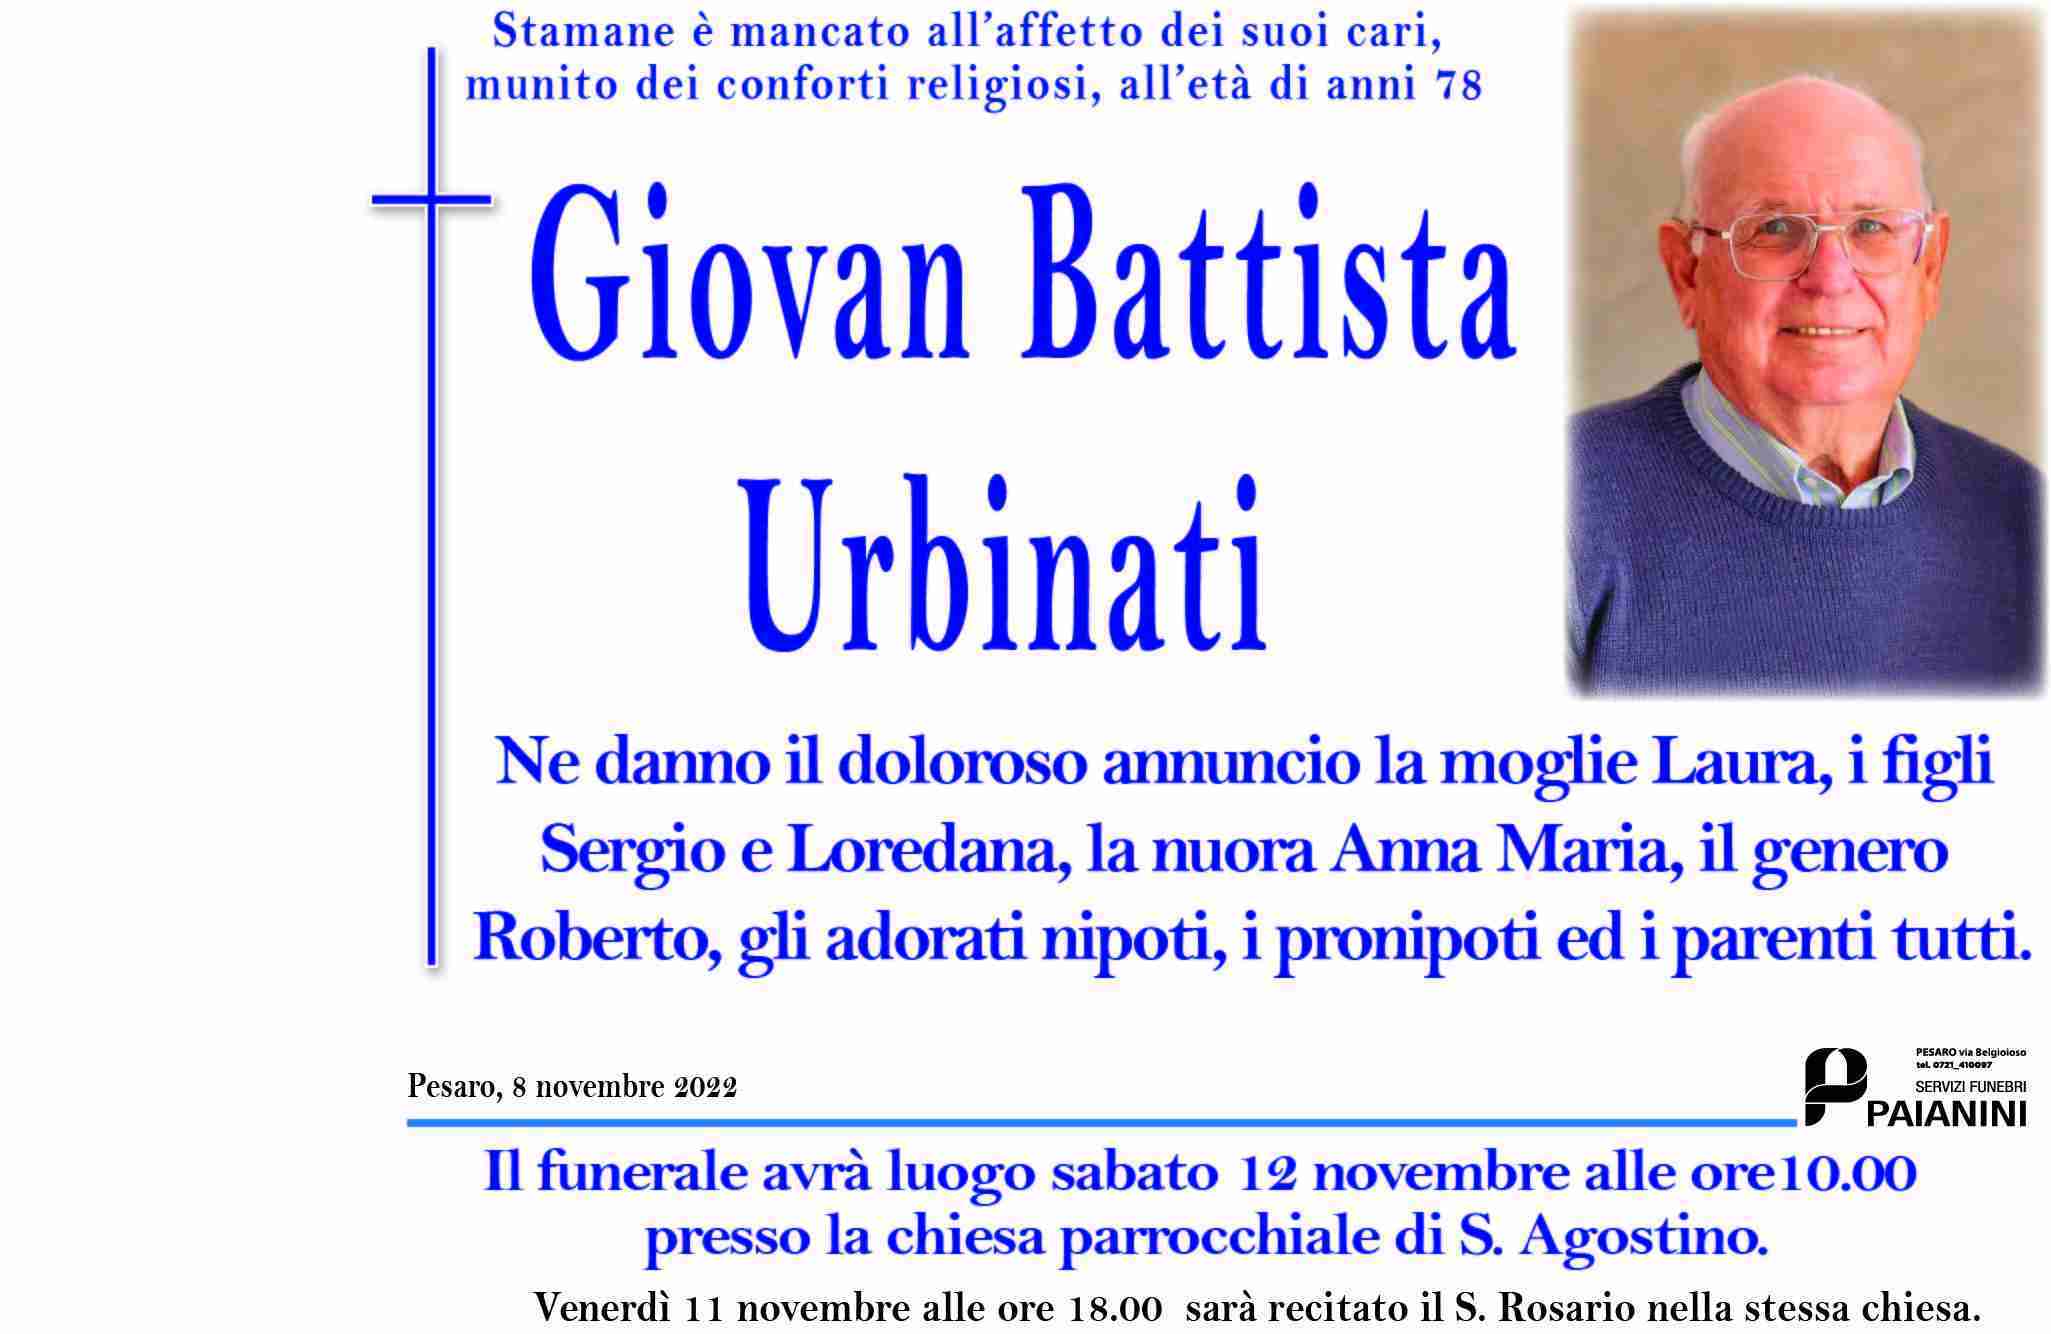 Giovan Battista Urbinati